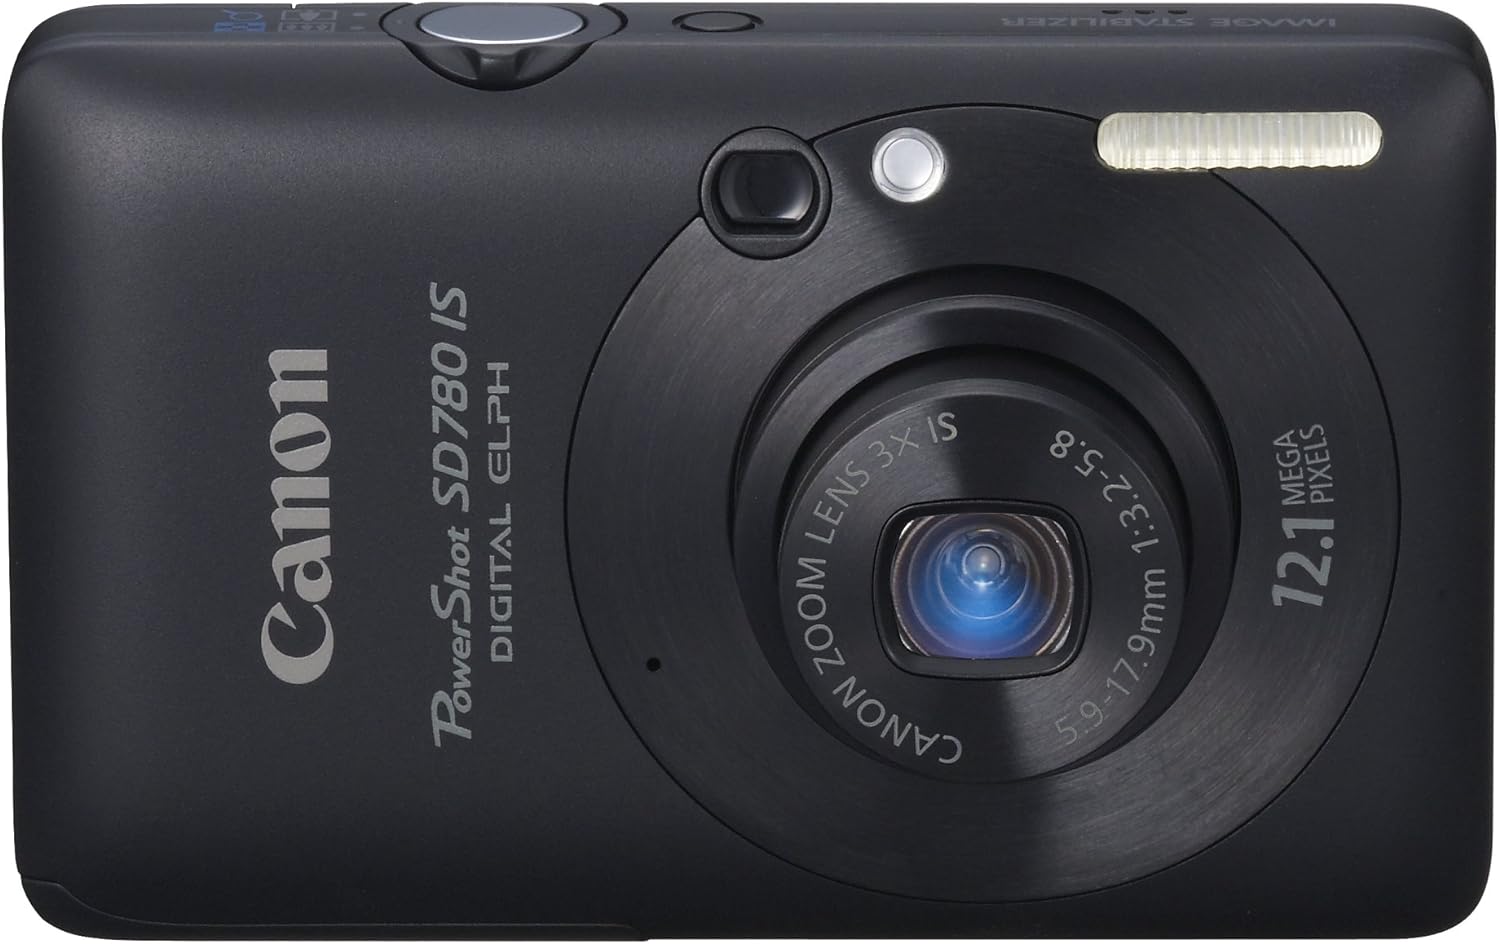 Canon PowerShot SD780IS Cámara digital de 12,1 MP con zoom estabilizado de imagen óptica 3x y pantalla LCD de 2,5 pulgadas (negro) (descontinuado por el fabricante)